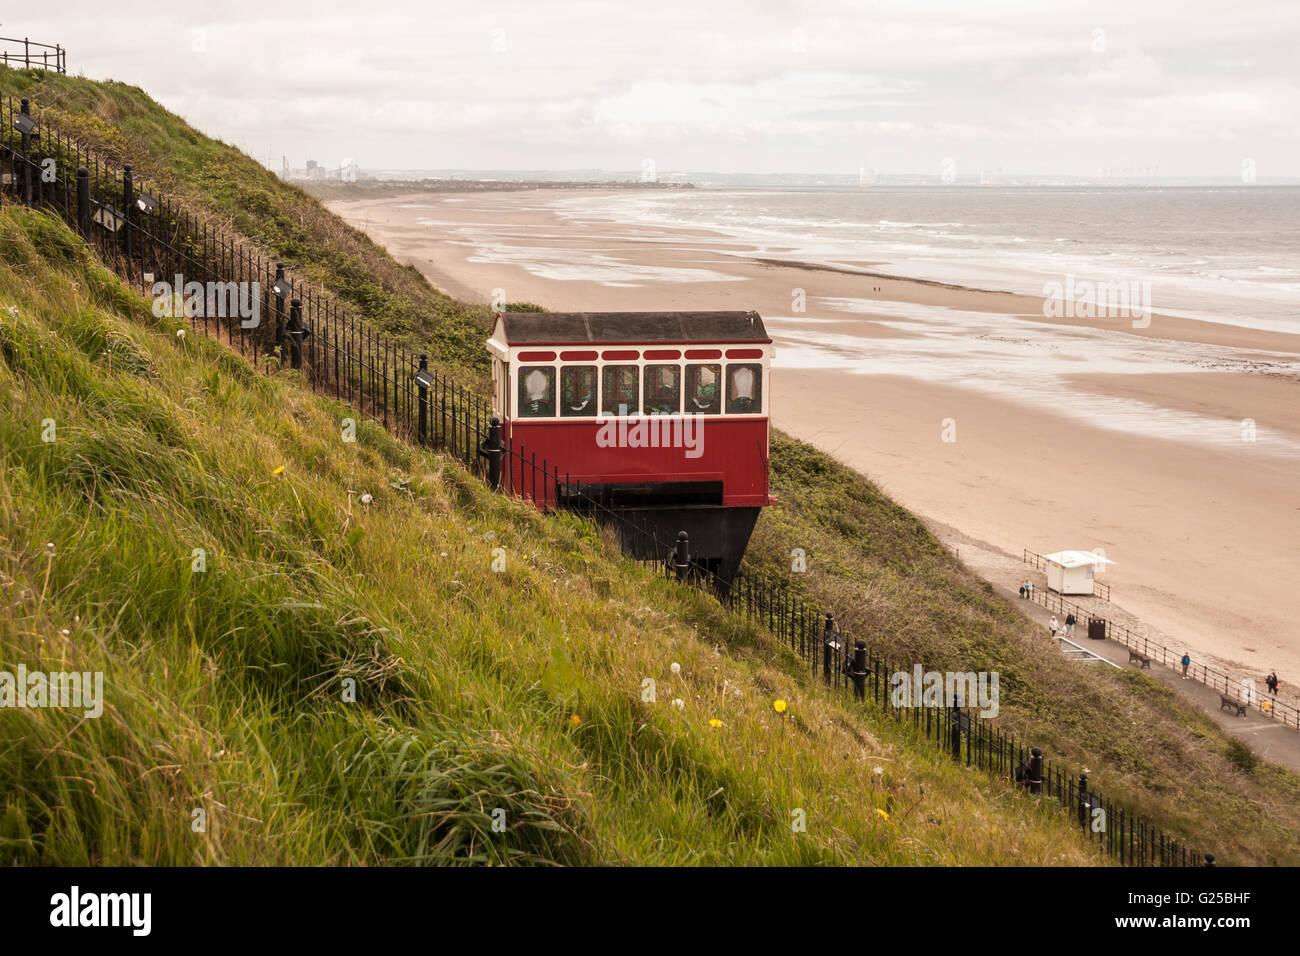 Ein Landschaft Blick auf die malerische Standseilbahn Schiene heben Sie von der Klippe zum Strand von Saltburn am Meer, England, UK Stockfoto